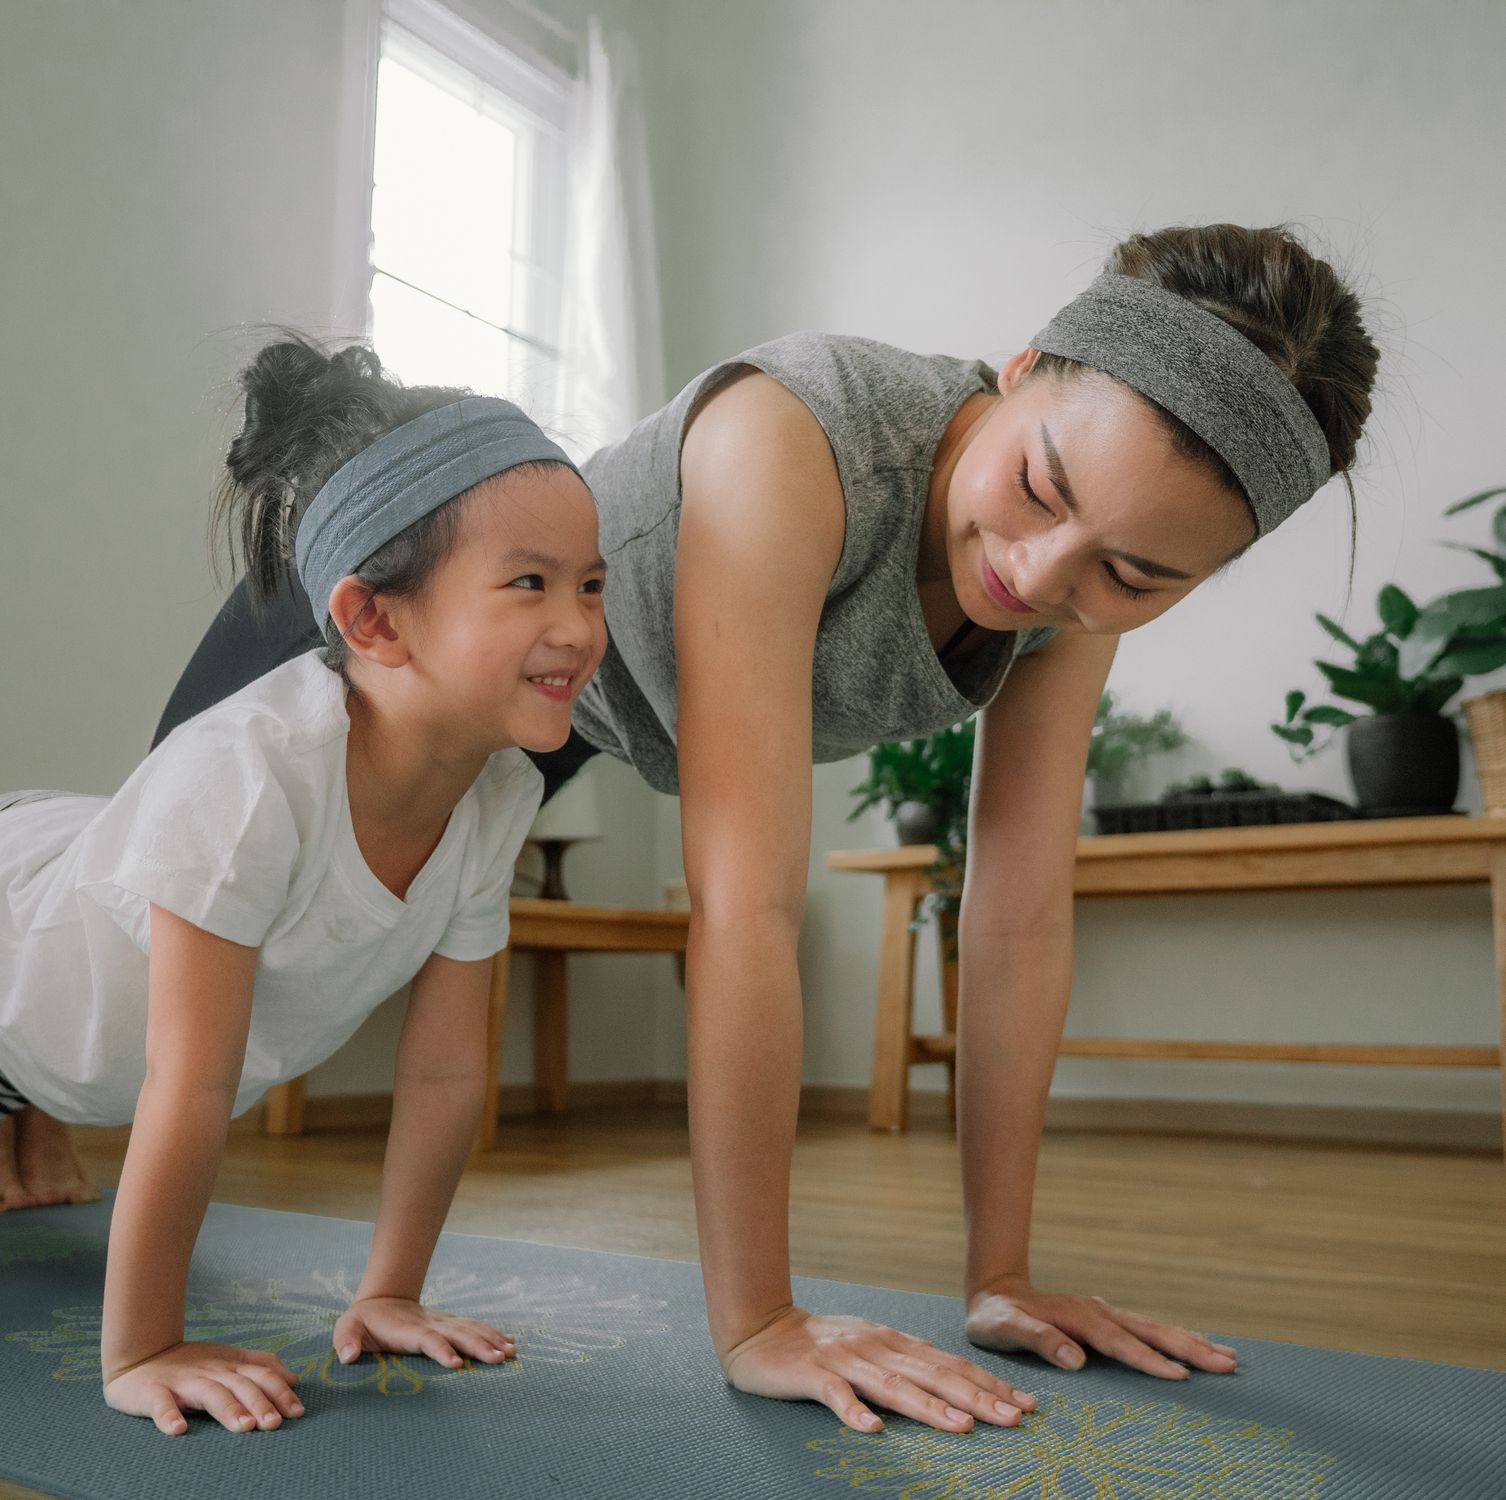 Vídeos y tablas para hacer ejercicio en casa, fácil y gratis